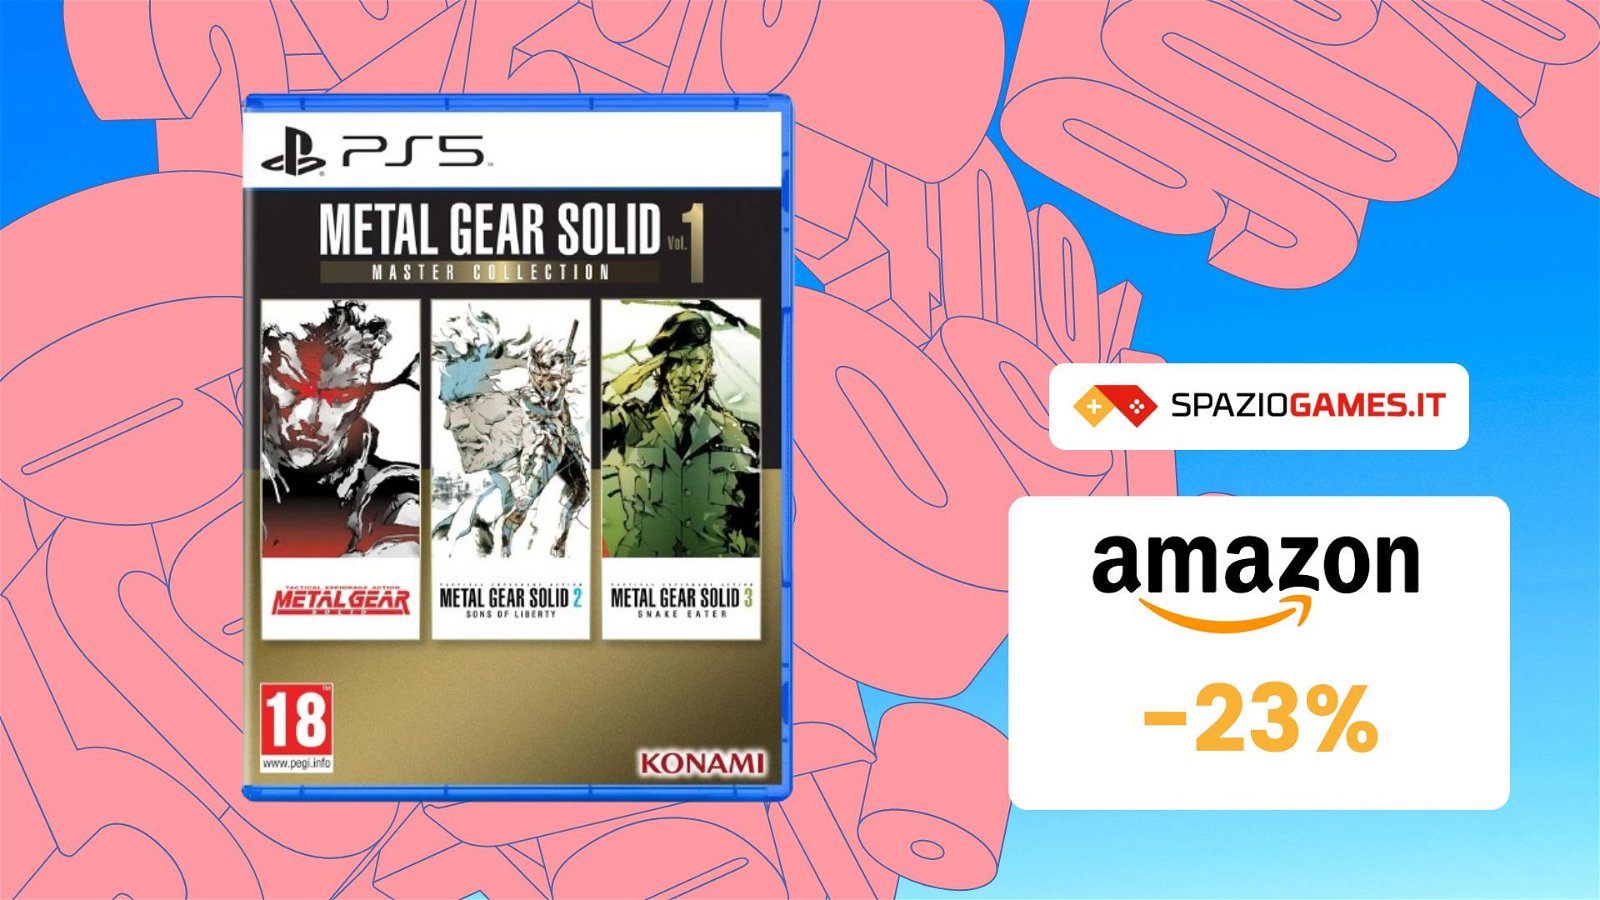 Metal Gear Solid Master Collection Vol. 1 per PS5 a un prezzo INCREDIBILE! 23% di SCONTO!